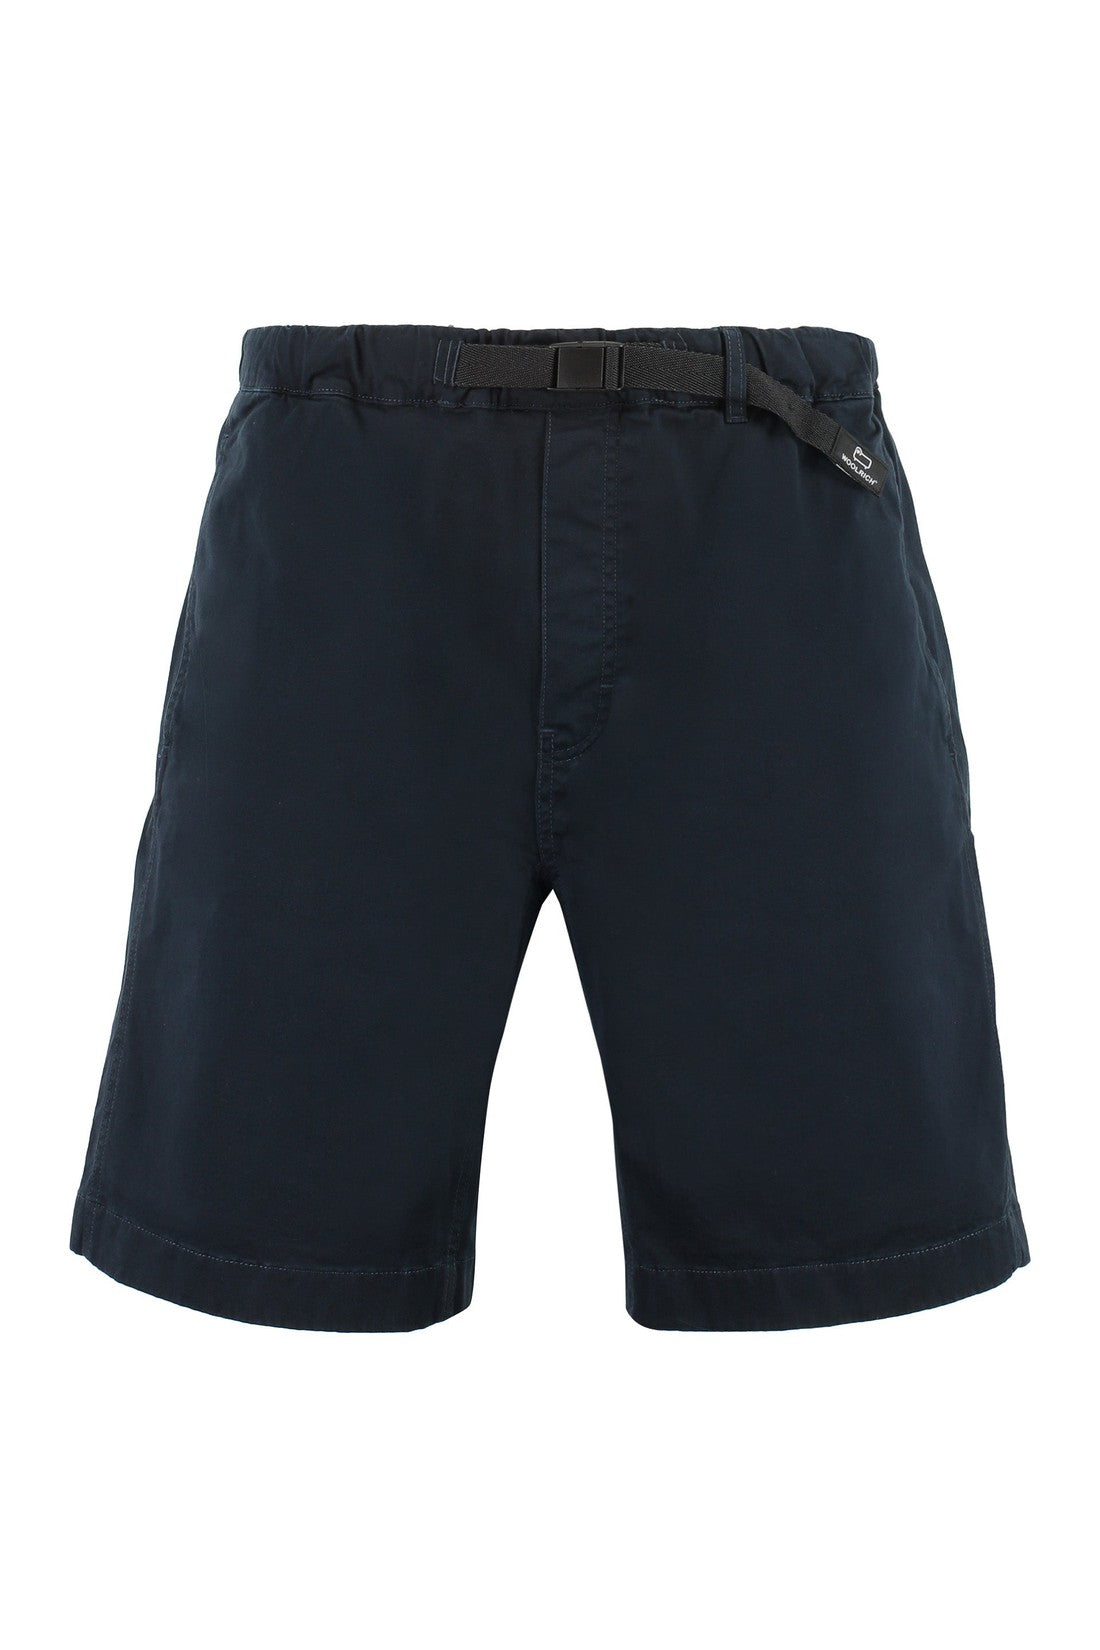 Woolrich-OUTLET-SALE-Cotton shorts-ARCHIVIST